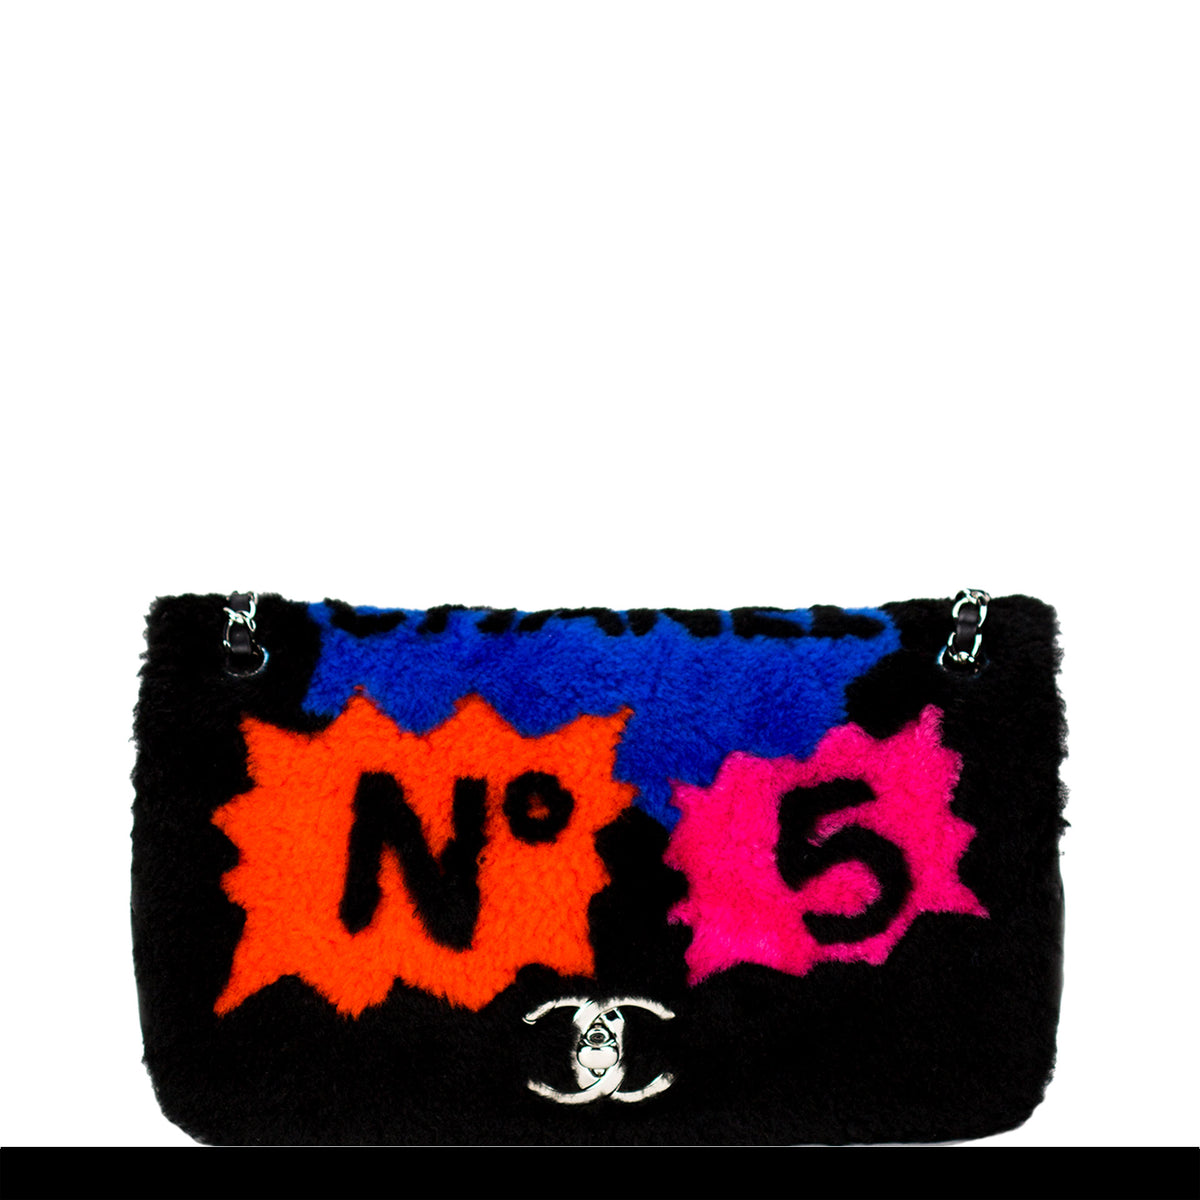 Chanel Pop Art Bag - 5 For Sale on 1stDibs